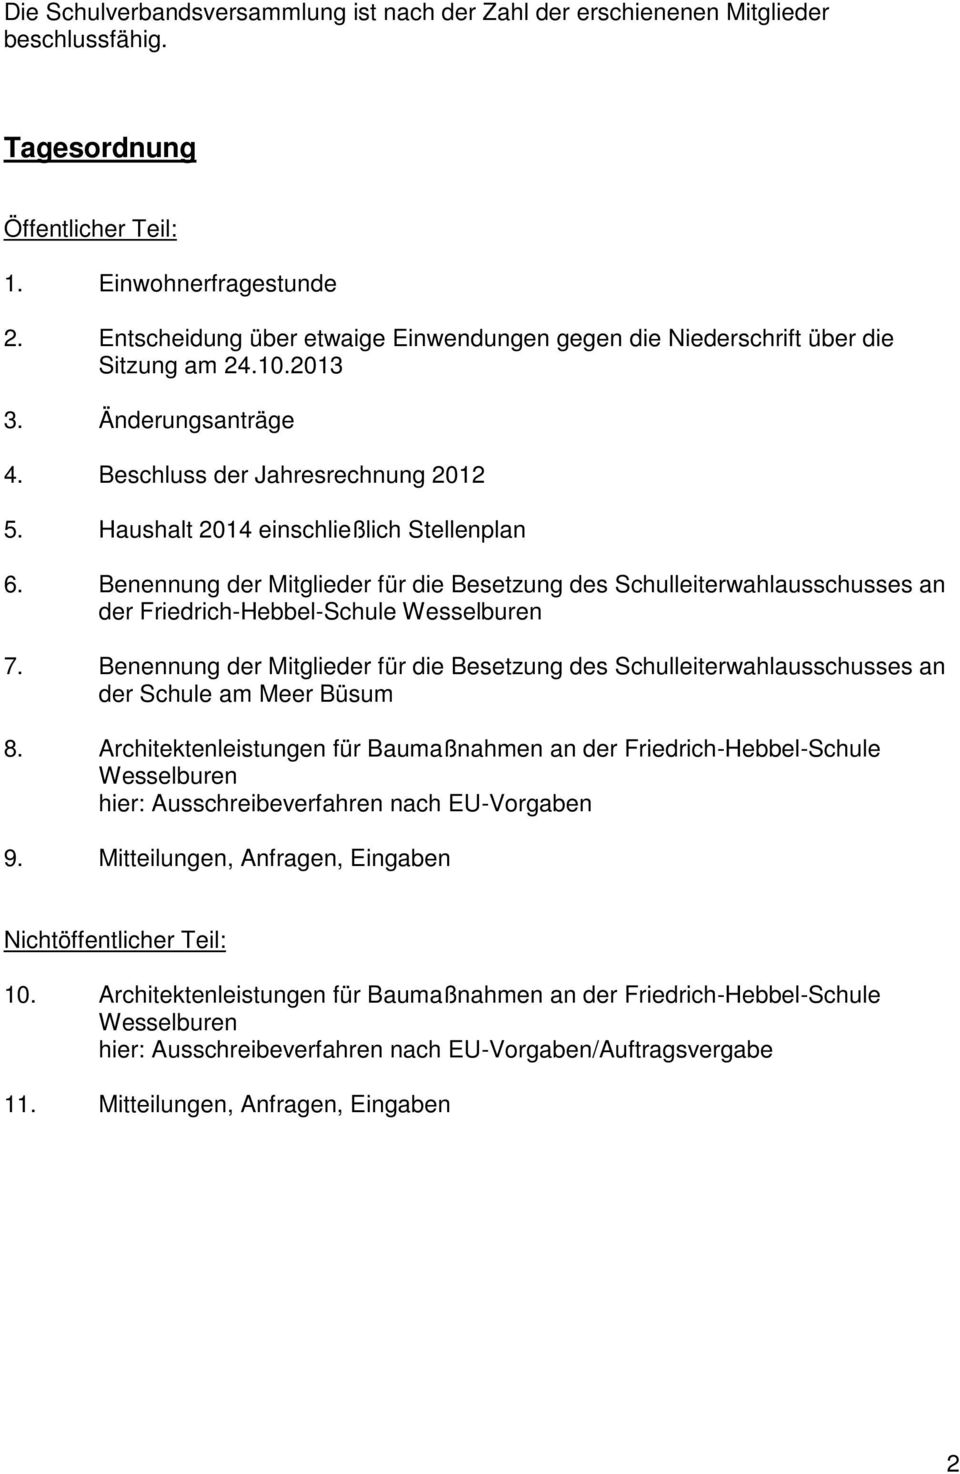 Benennung der Mitglieder für die Besetzung des Schulleiterwahlausschusses an der Friedrich-Hebbel-Schule Wesselburen 7.